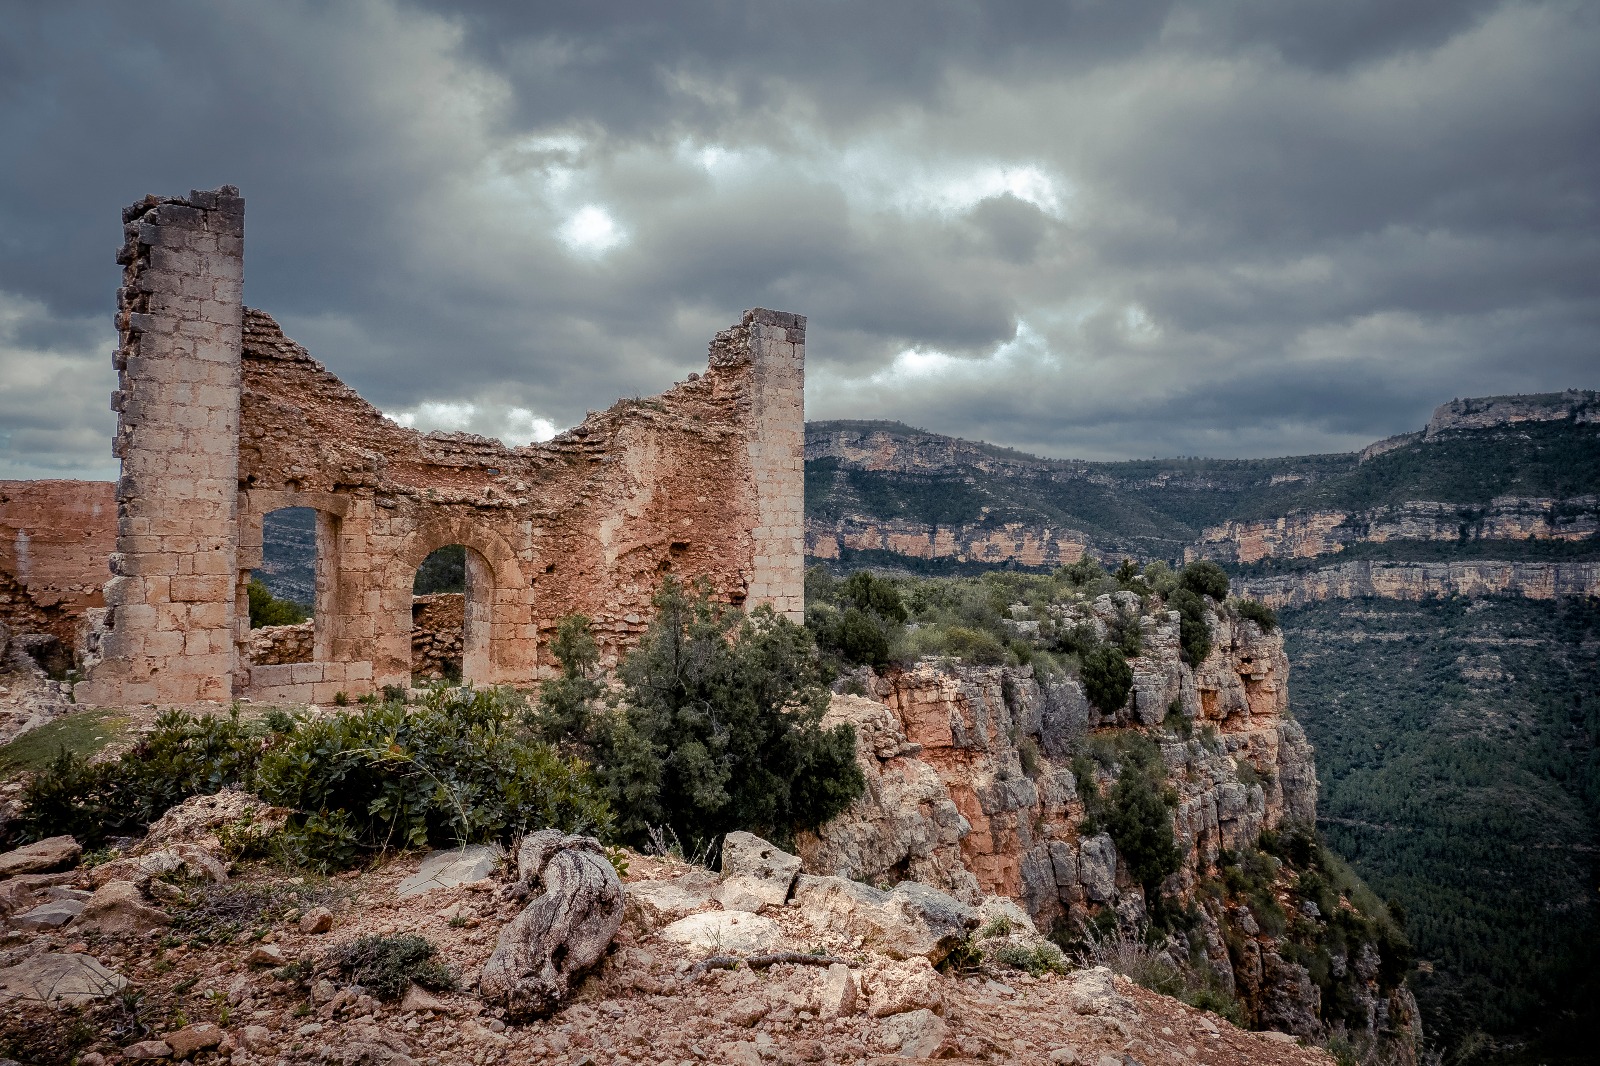 Excursión al castillo de Chirel (Cortes de Pallás) | AMPA  TANCADETA-BONAVISTA